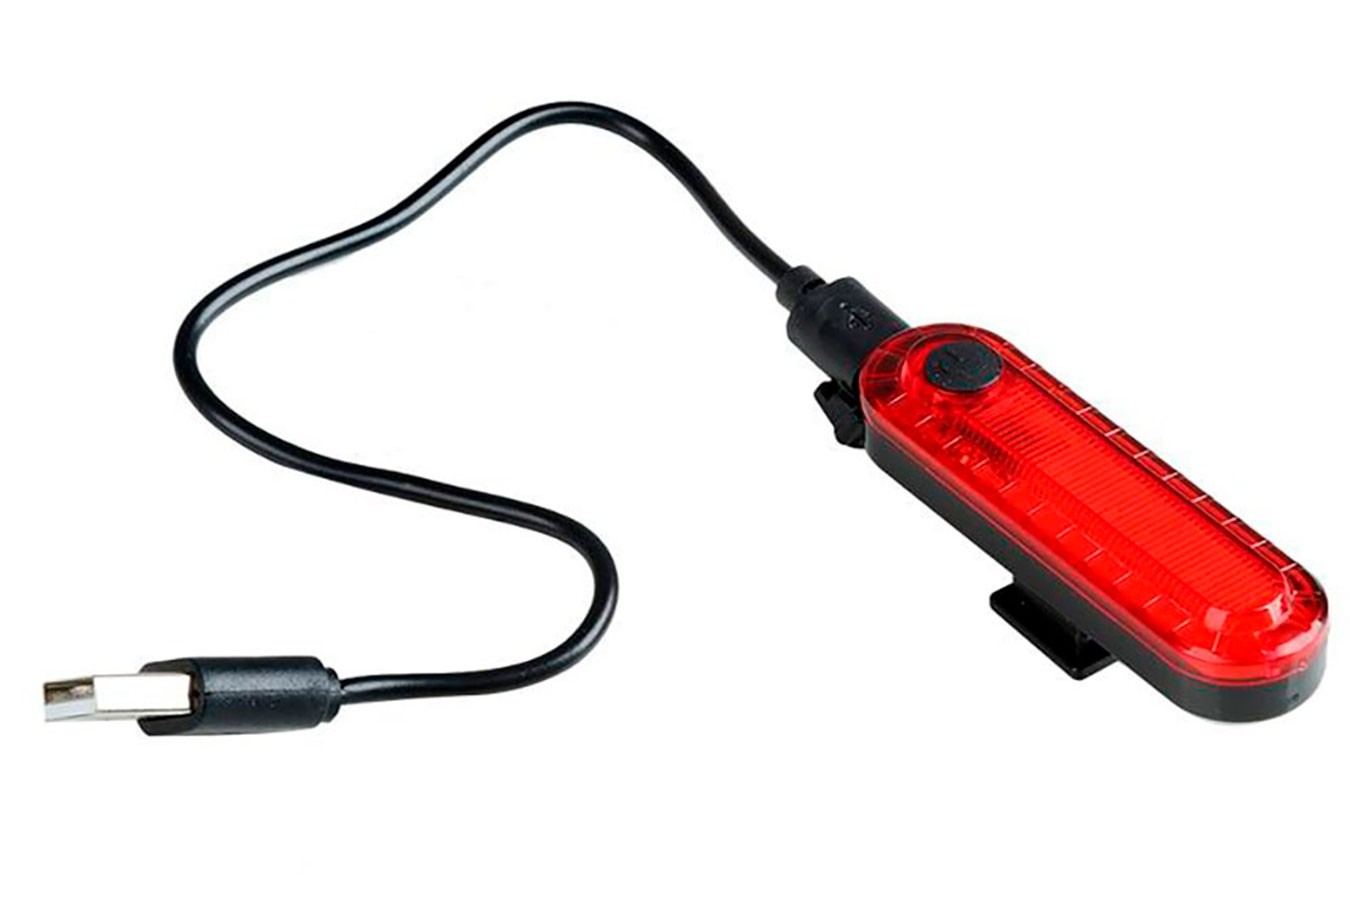 Vista Light Traseiro recarregável USB 10 lúmens vermelho - X-plore